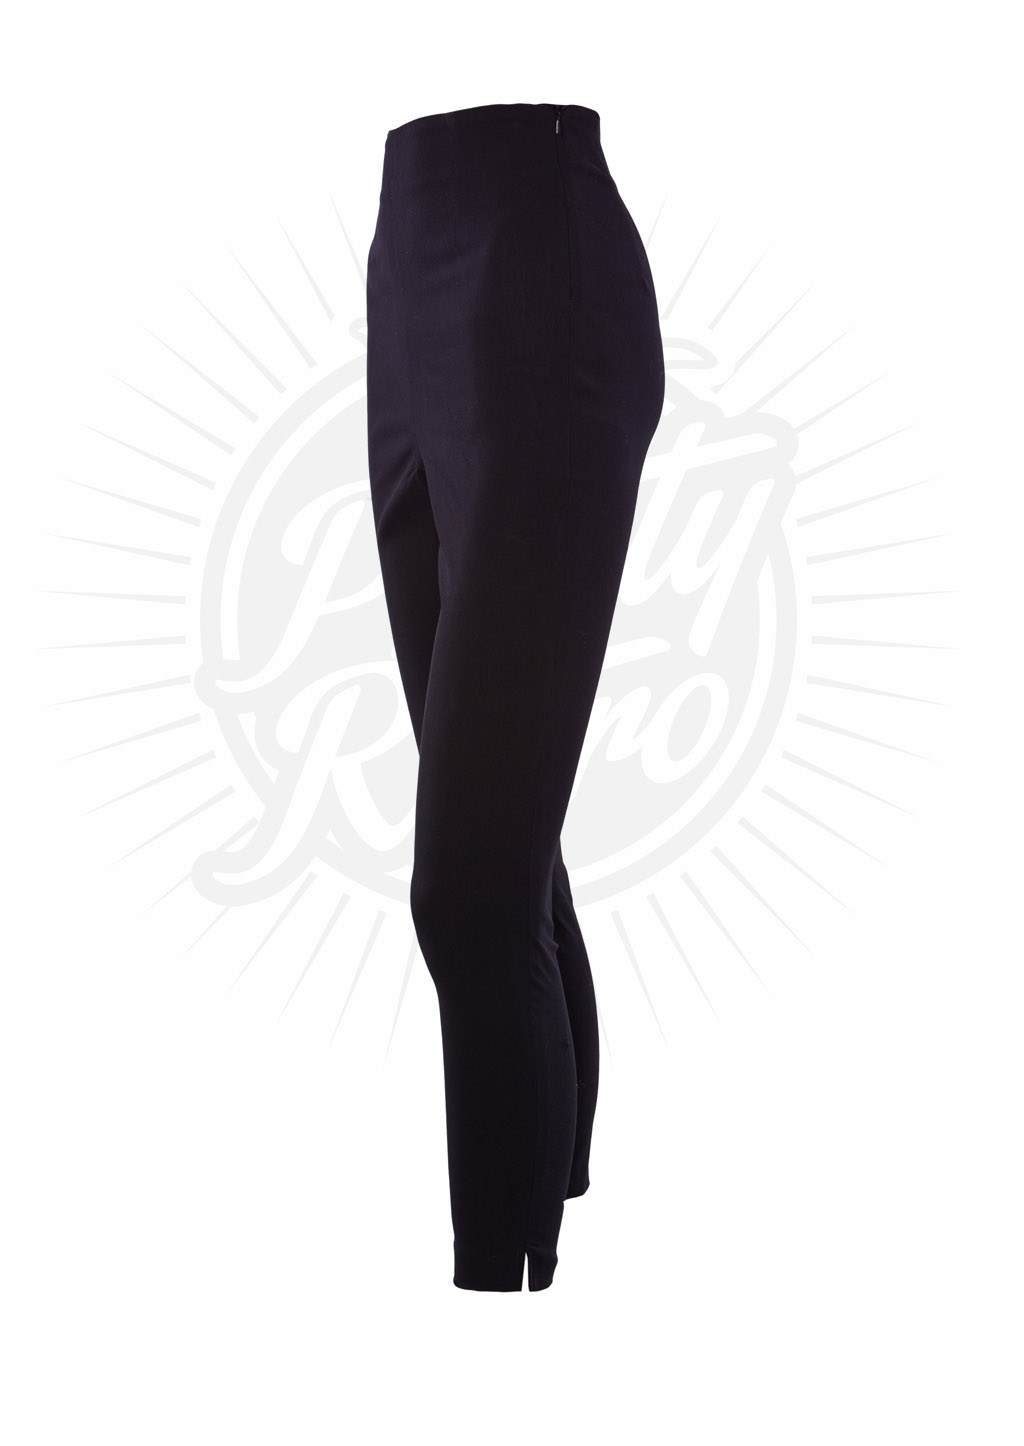 Retro 50s Style Capri Pants in Black :: Pretty Retro Wholesale